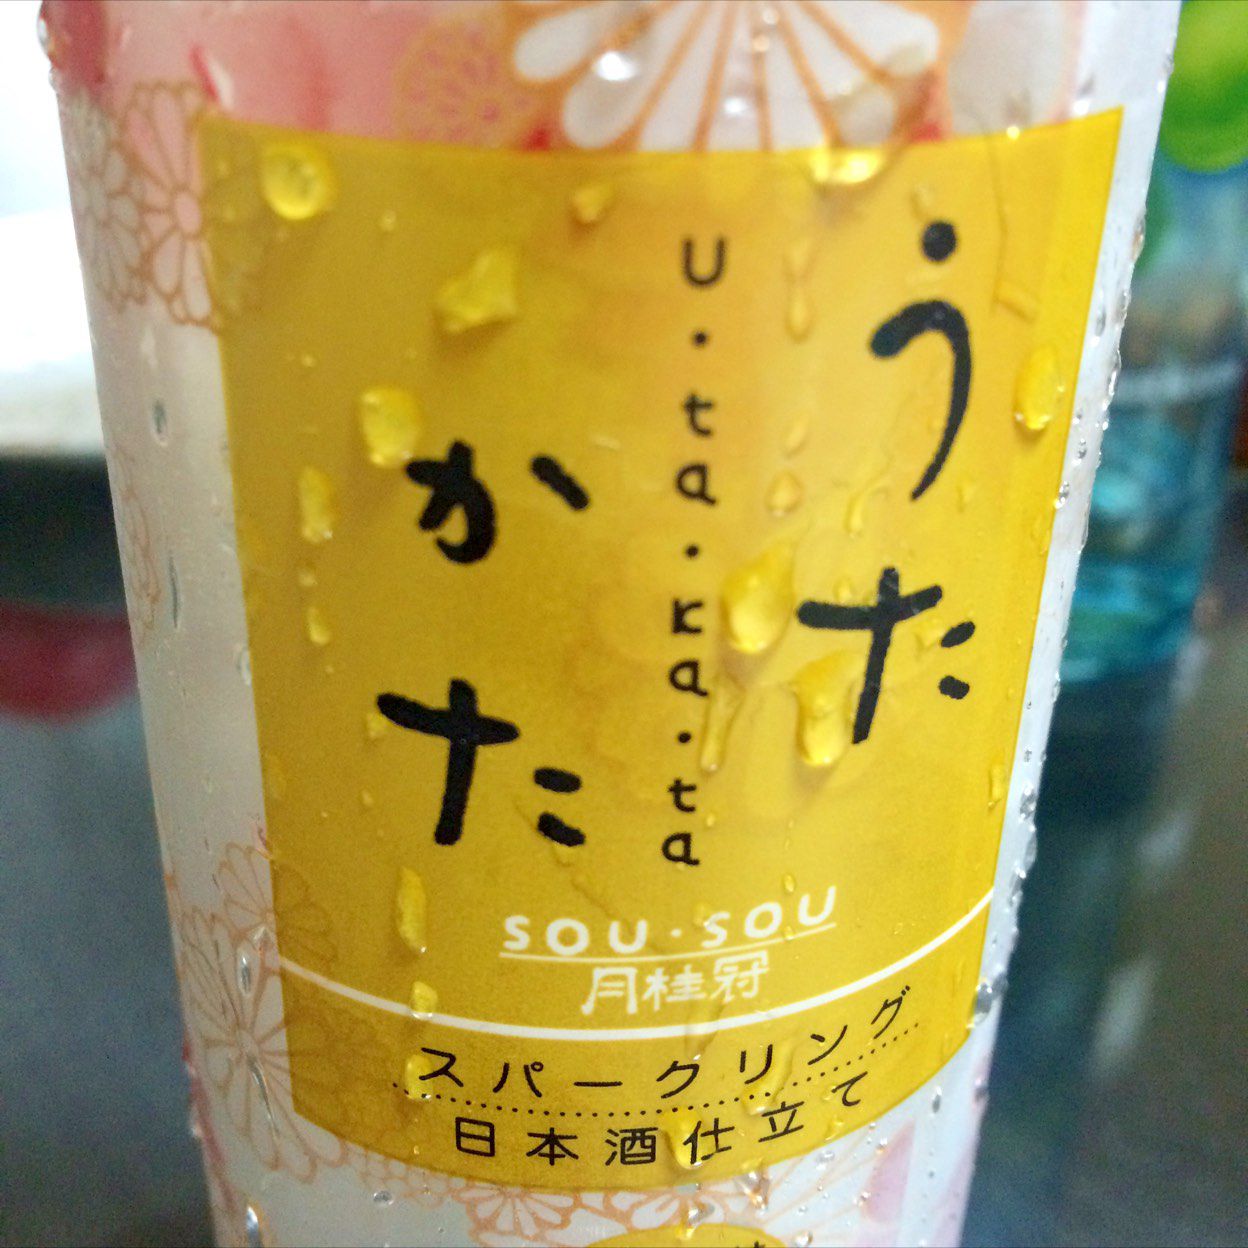 酒蔵のお土産が素敵すぎる 新定番 京都の酒蔵めぐりで発見したオススメお土産10選 Retrip リトリップ